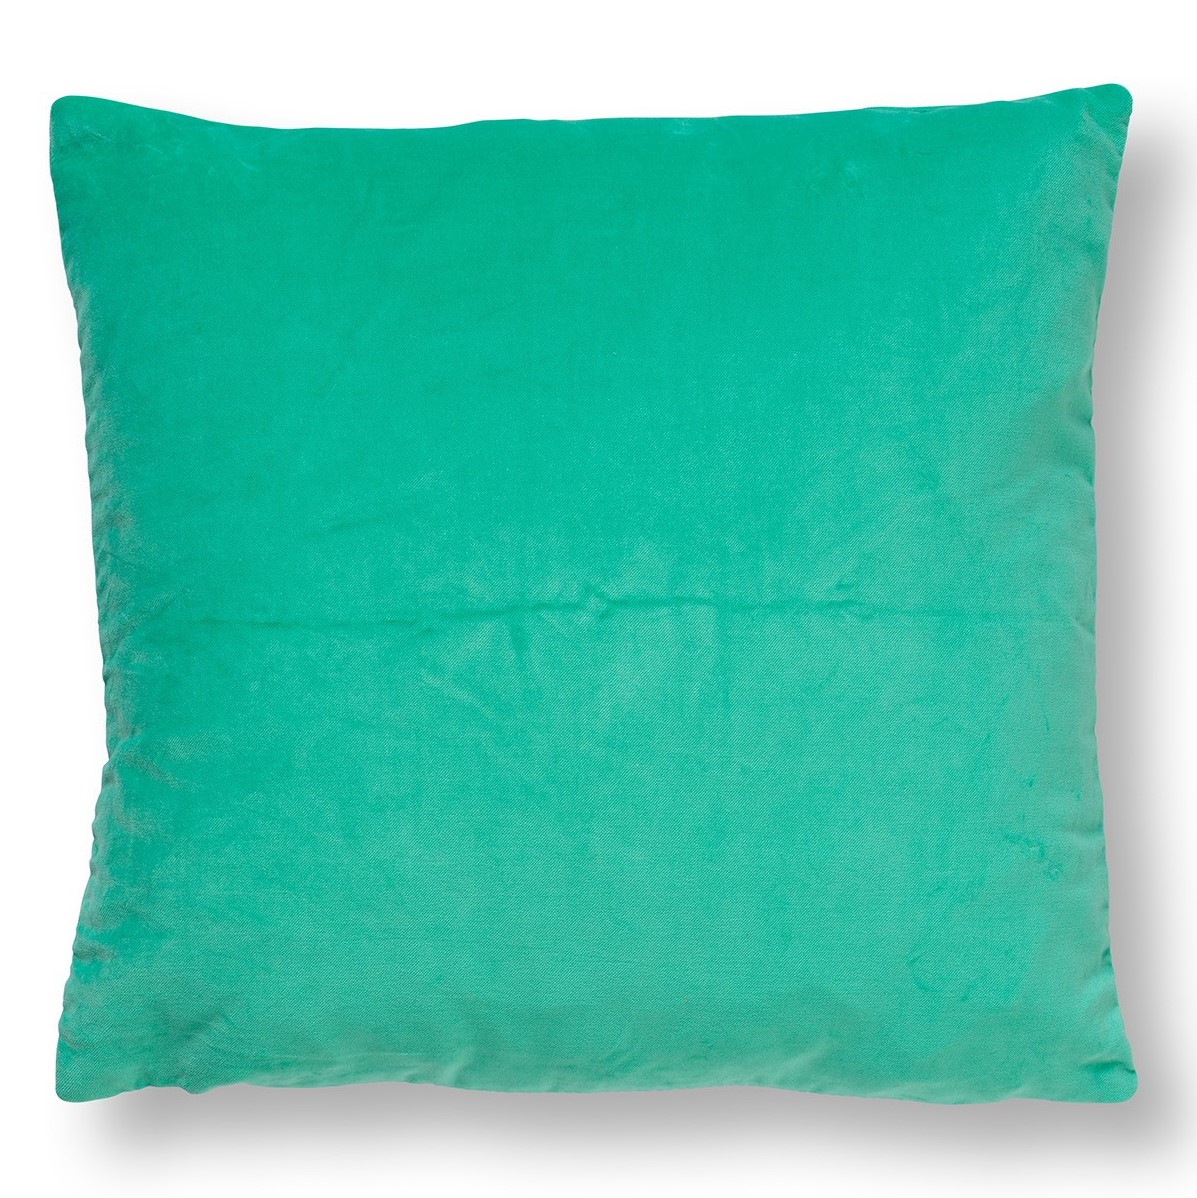 PEBBE - Sierkussen velvet 45x45 cm - beveled glass - groen - blauw - strepen - color blocking 